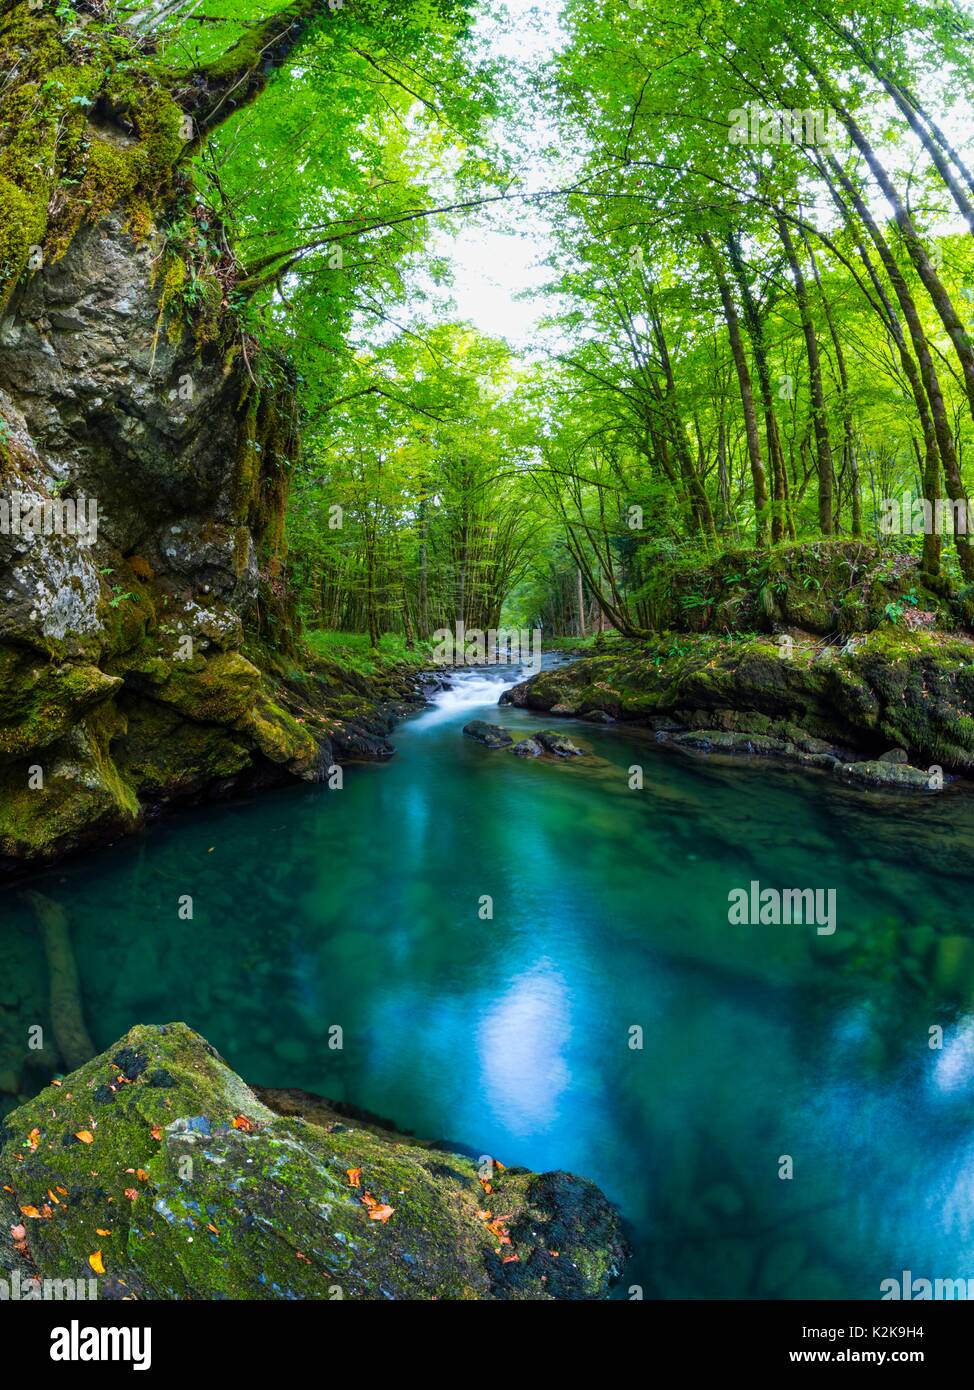 Schöne vertikale Landschaft natürliche Landschaft Provinz Gorski kotar in Kroatien Zeleni vir bei Skrad romantische Nostalgie nostalgisch fantastische Aussicht Stockfoto